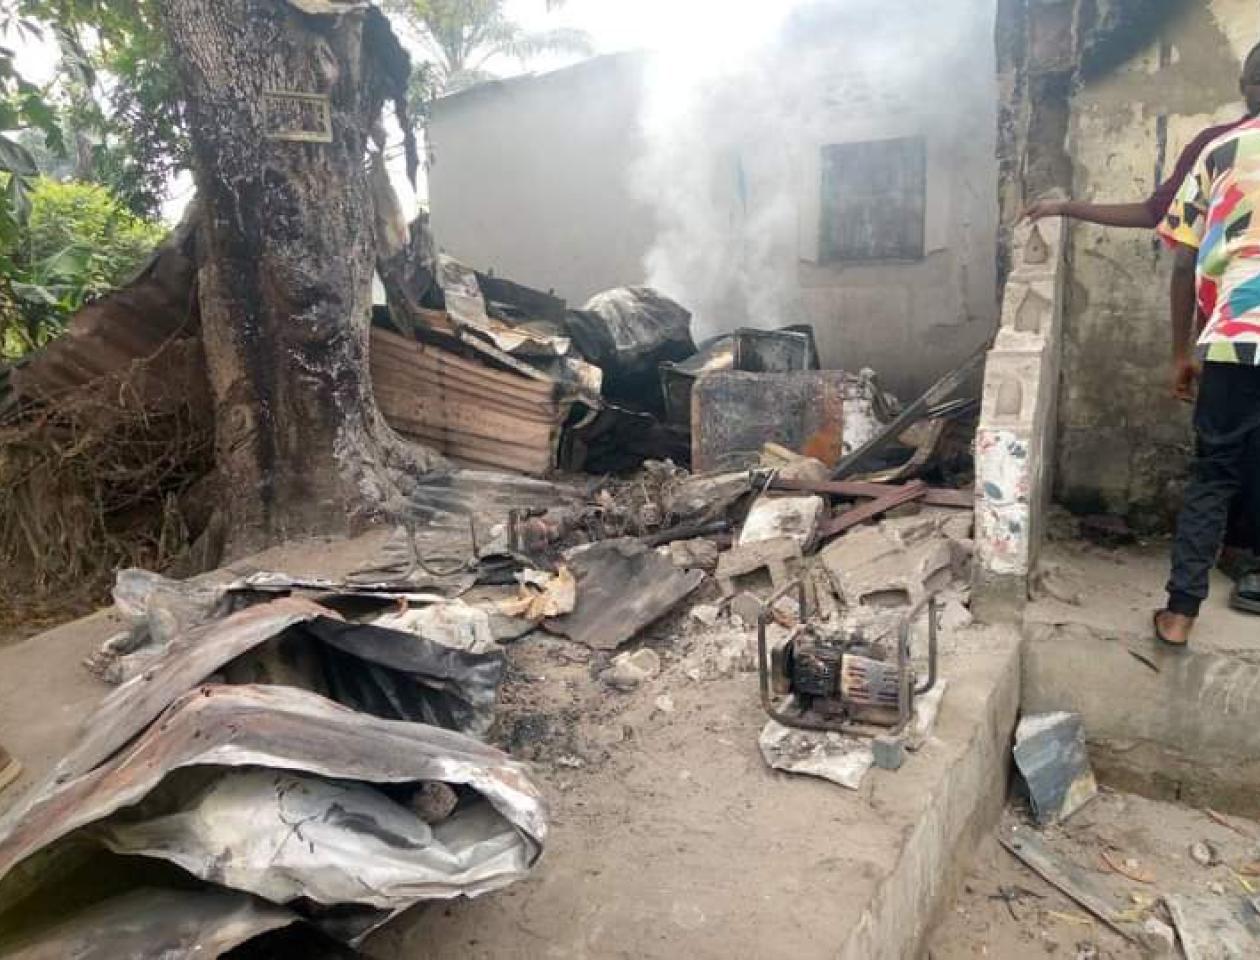 Maison incendiée avec deux personnes brûler à l'intérieur par le Kuluna du groupe Arabes à Kisenso dans la nuit du jeudi 20 avril.  